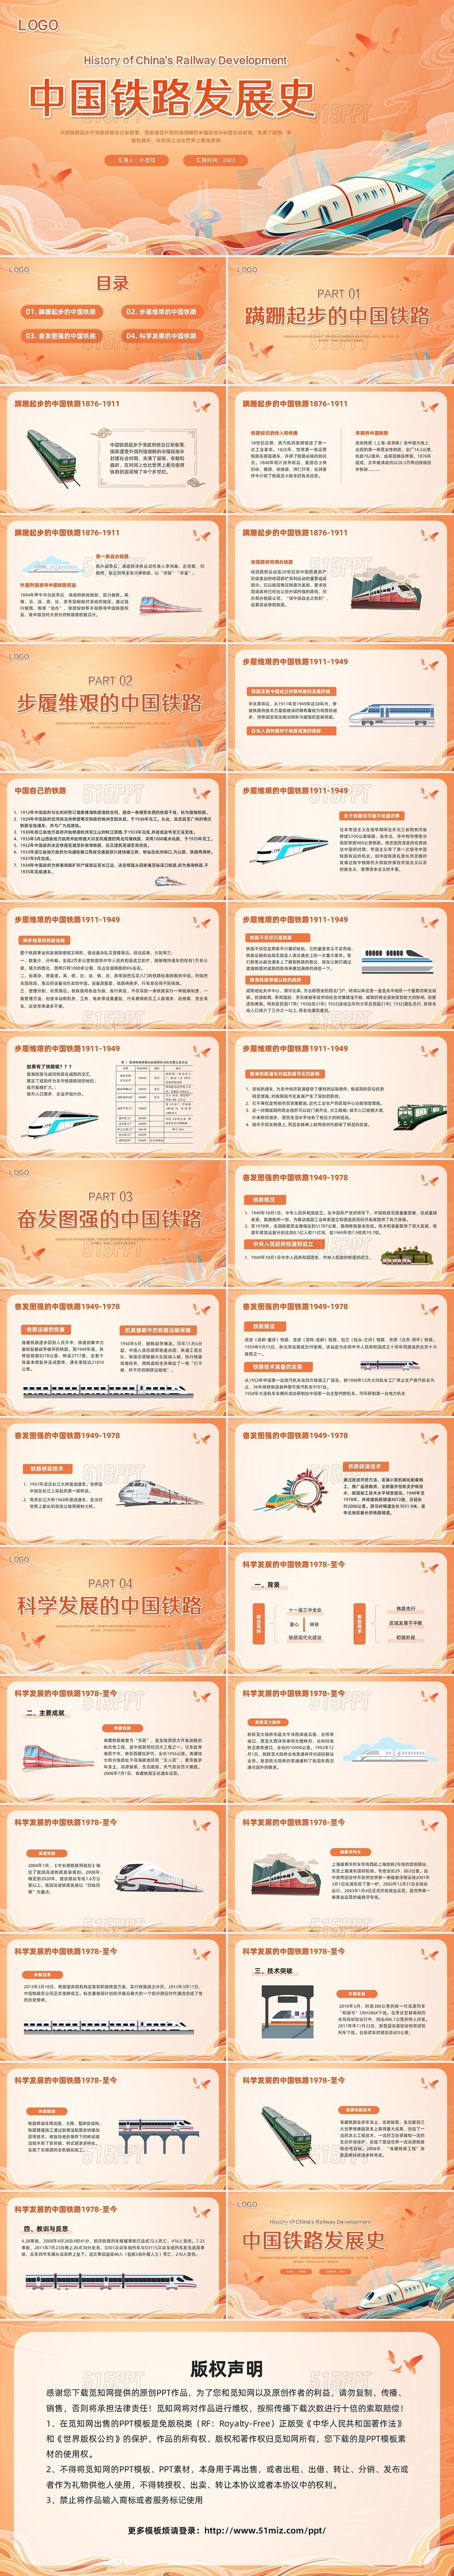 橙色国潮科学发展的中国铁路PPT模板宣传PPT动态PPT